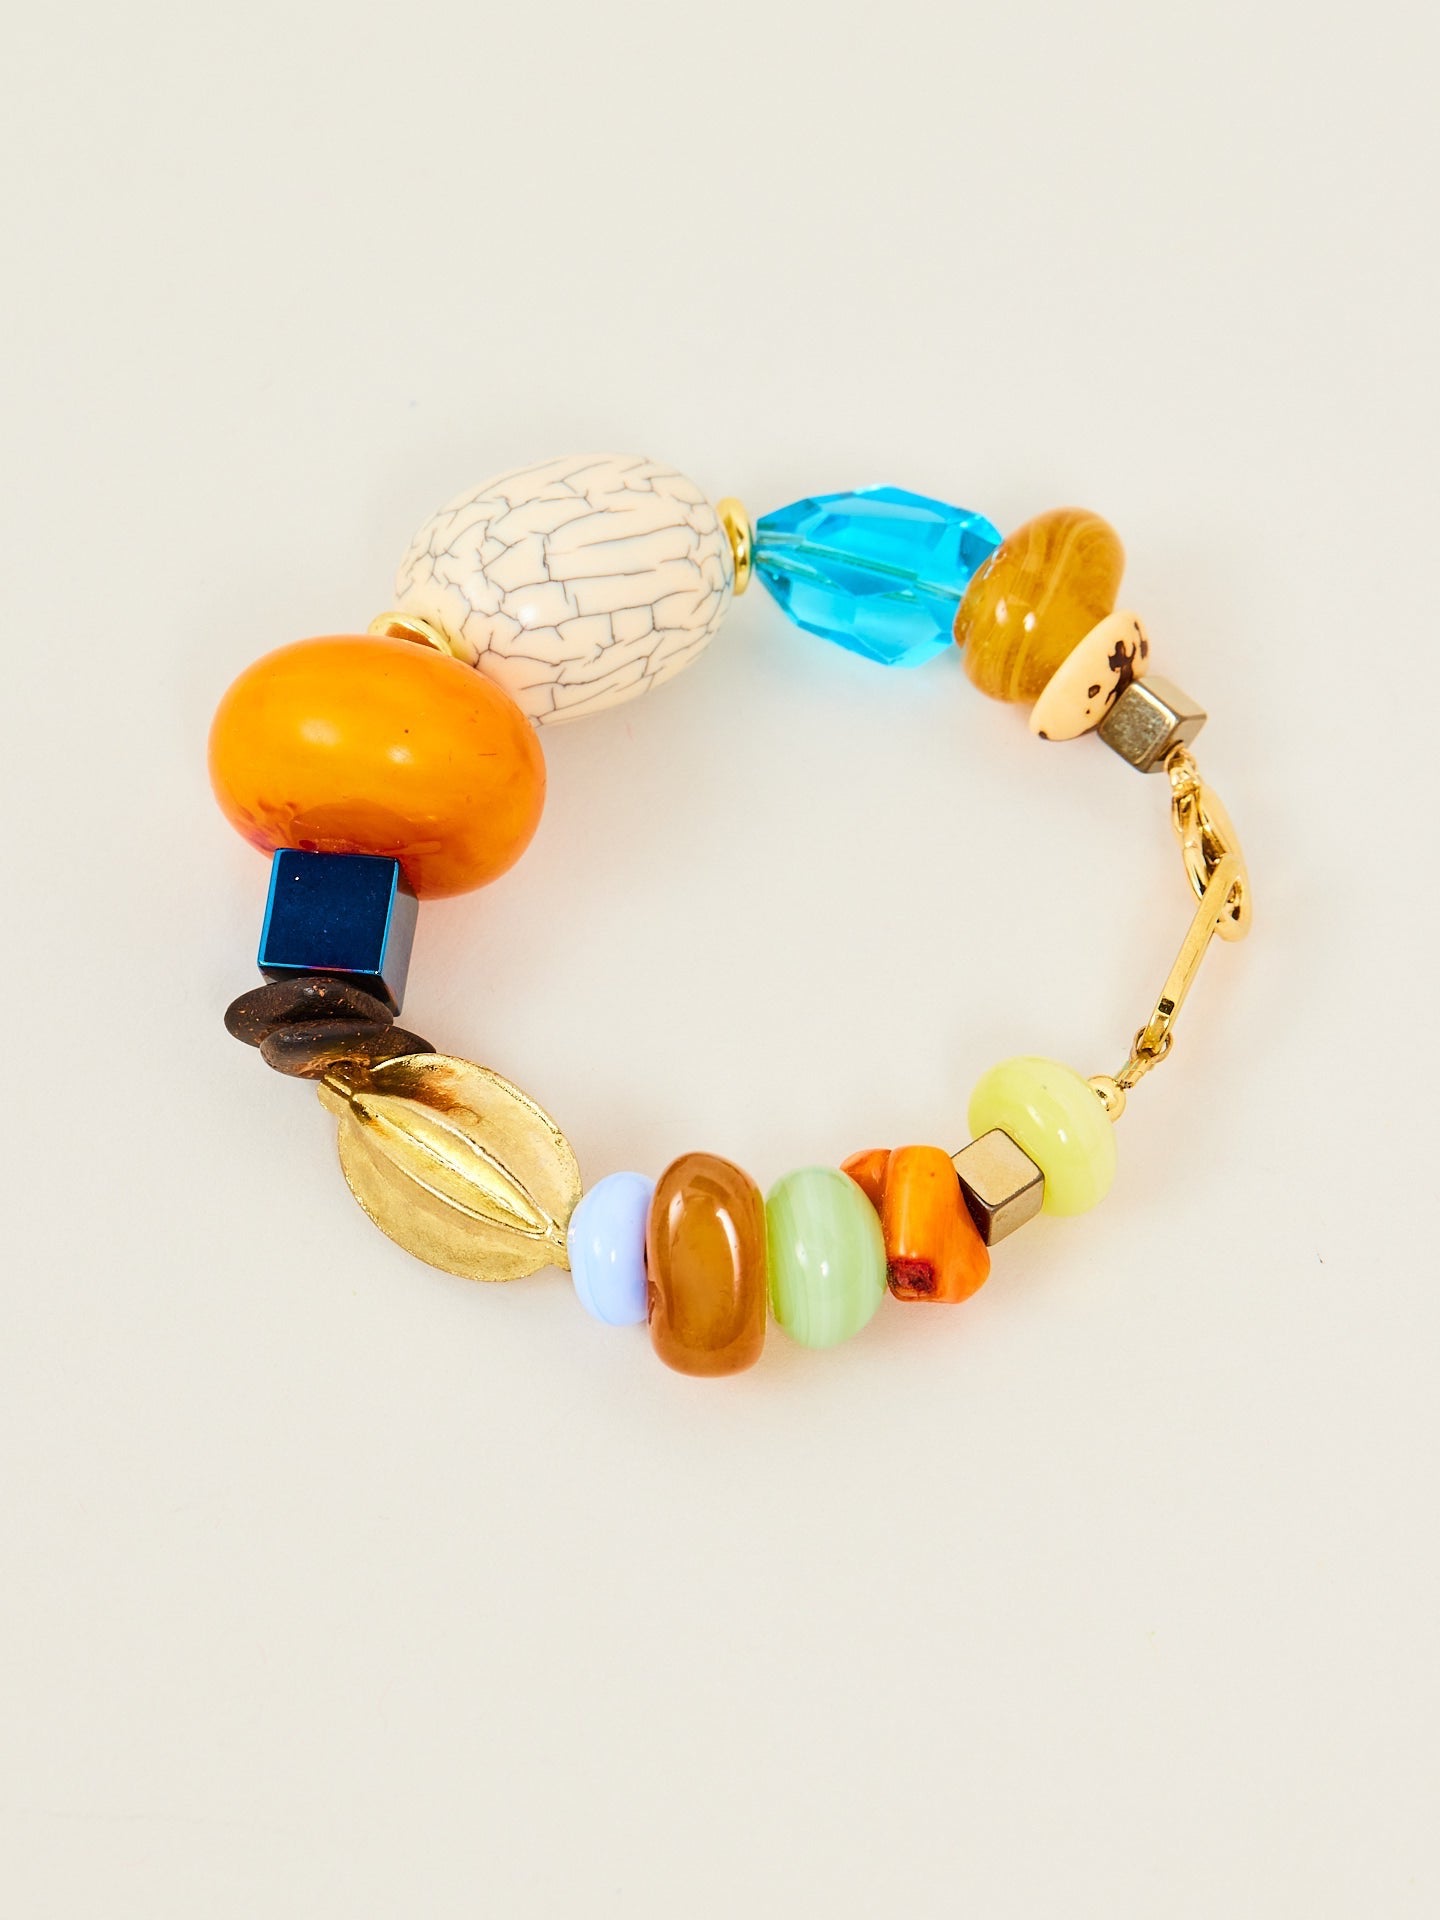 Wunderschönes Armband, bestehend aus bunten Steinen und einem goldenen Anteil.